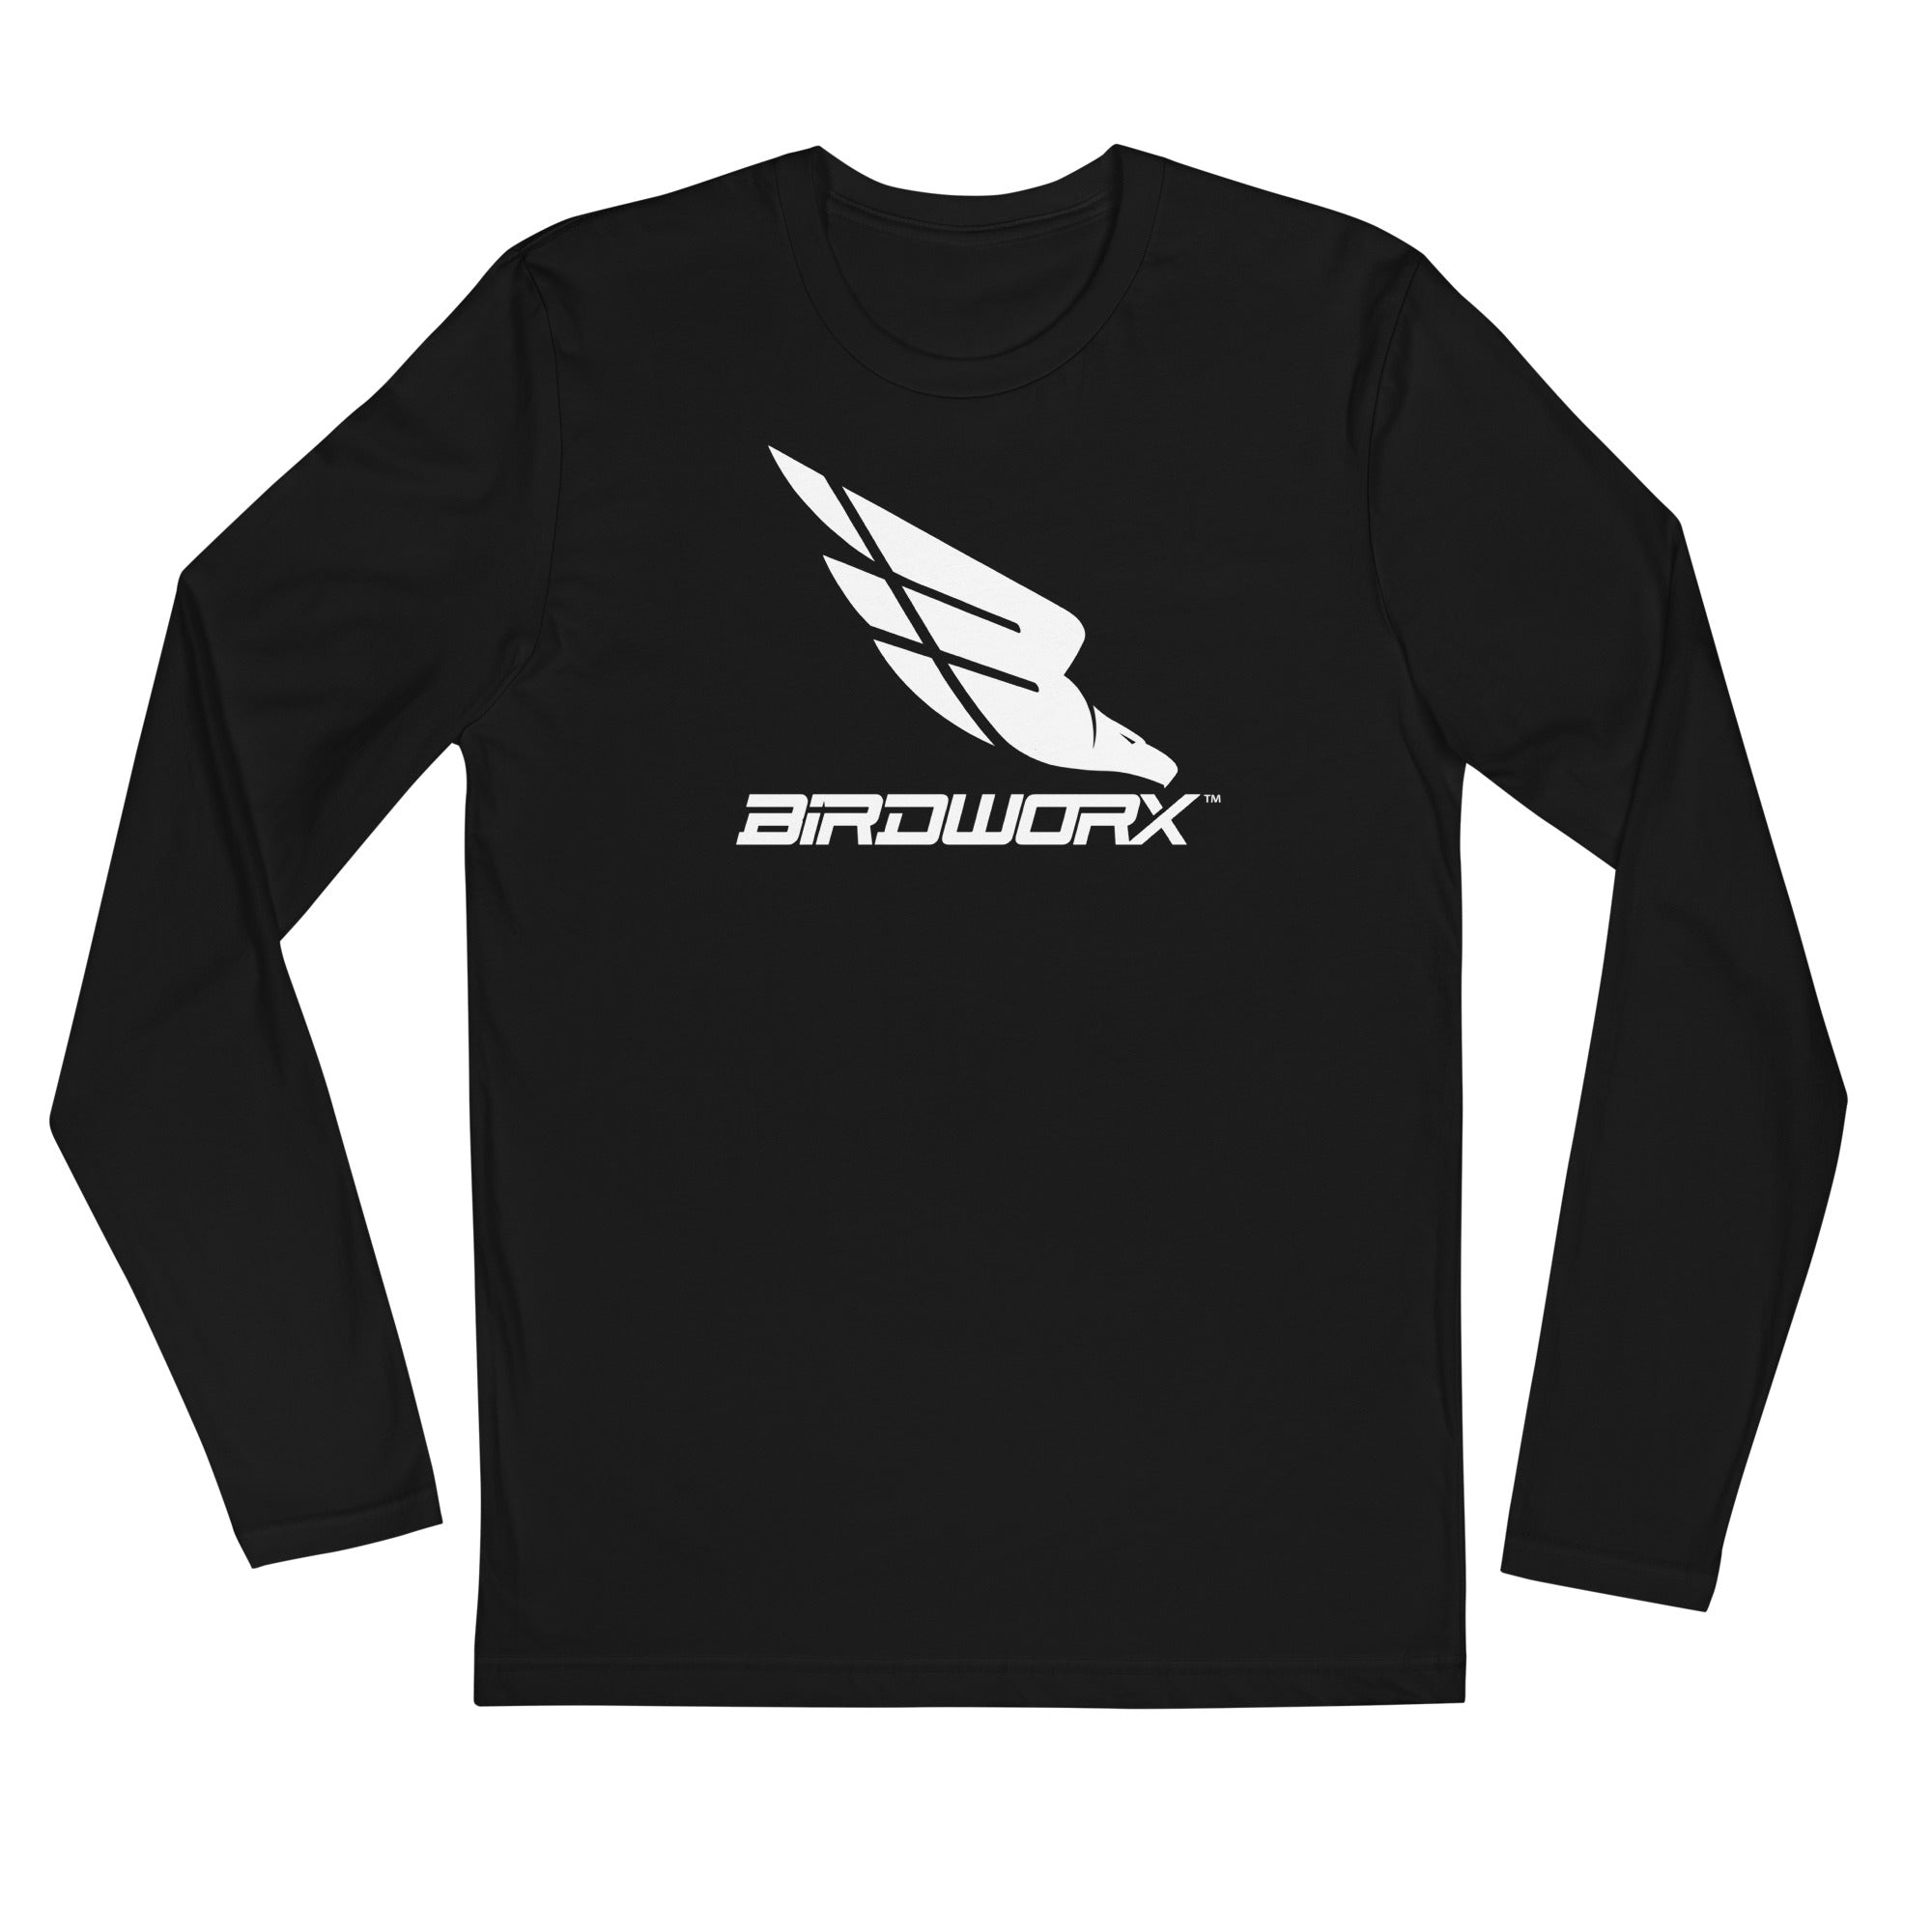 BIRDWORX - Long Sleeve T